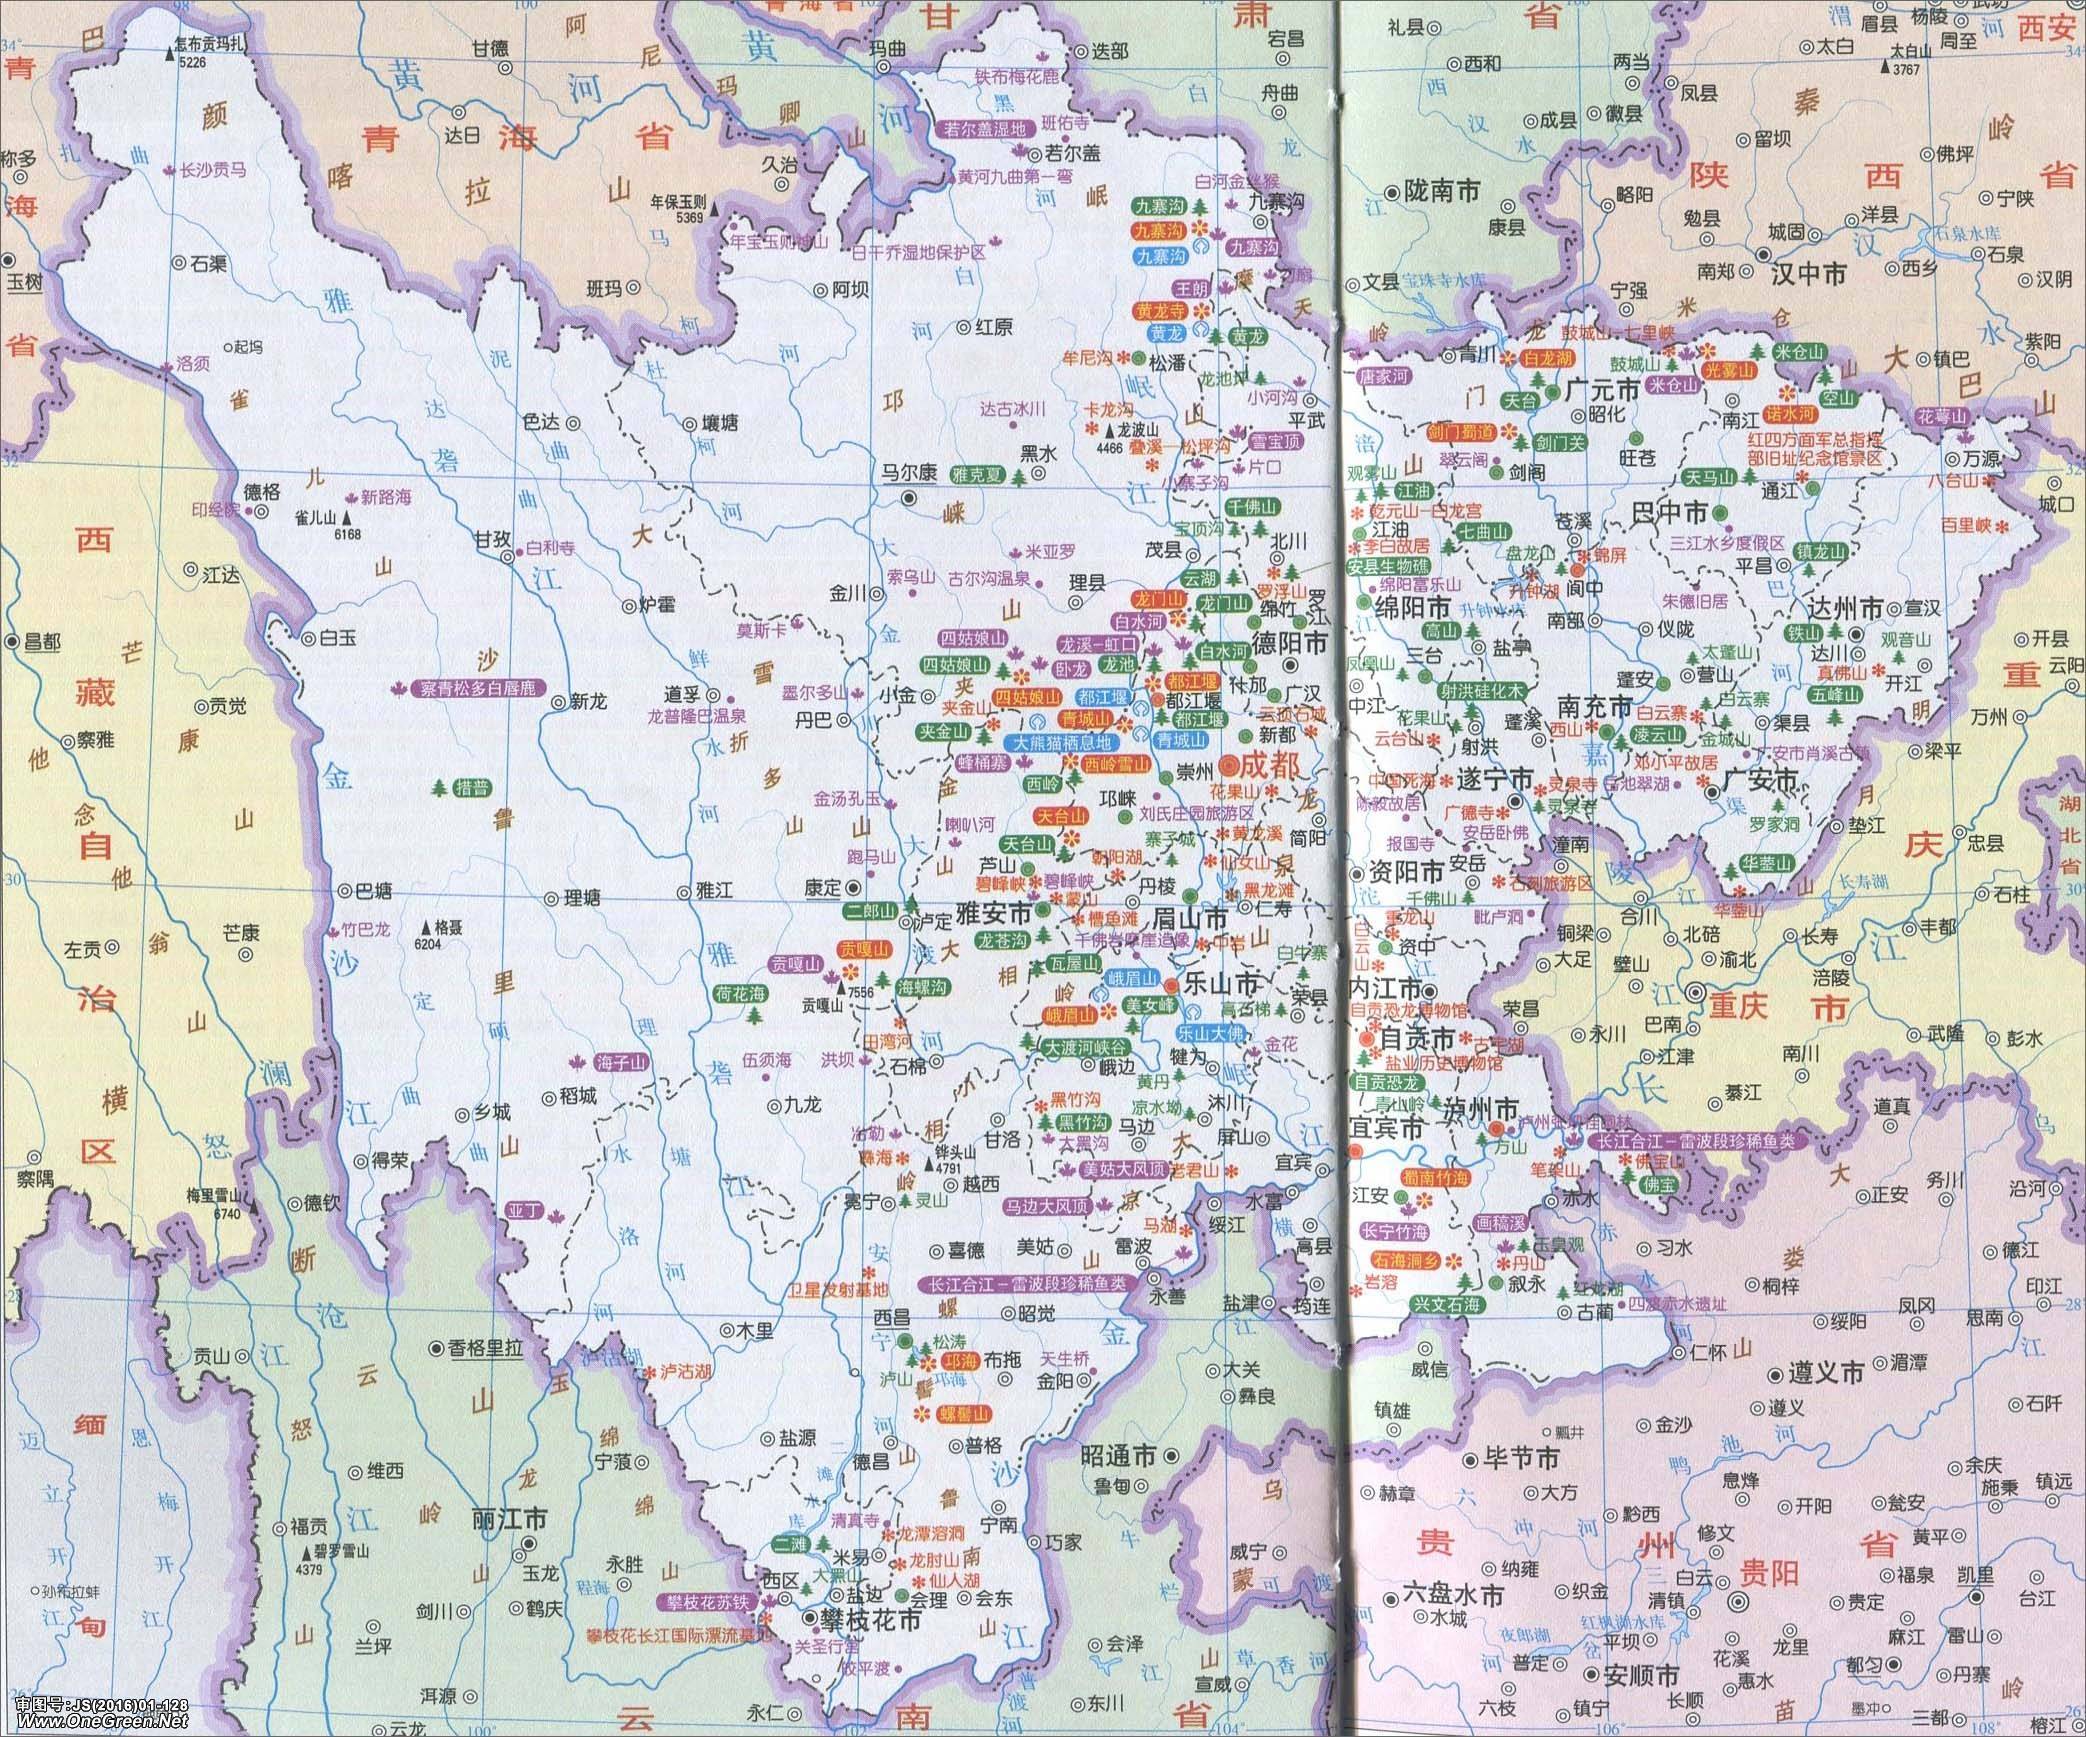 四川省地图 全图 放大,四川省地图高清版2021 - 伤感说说吧